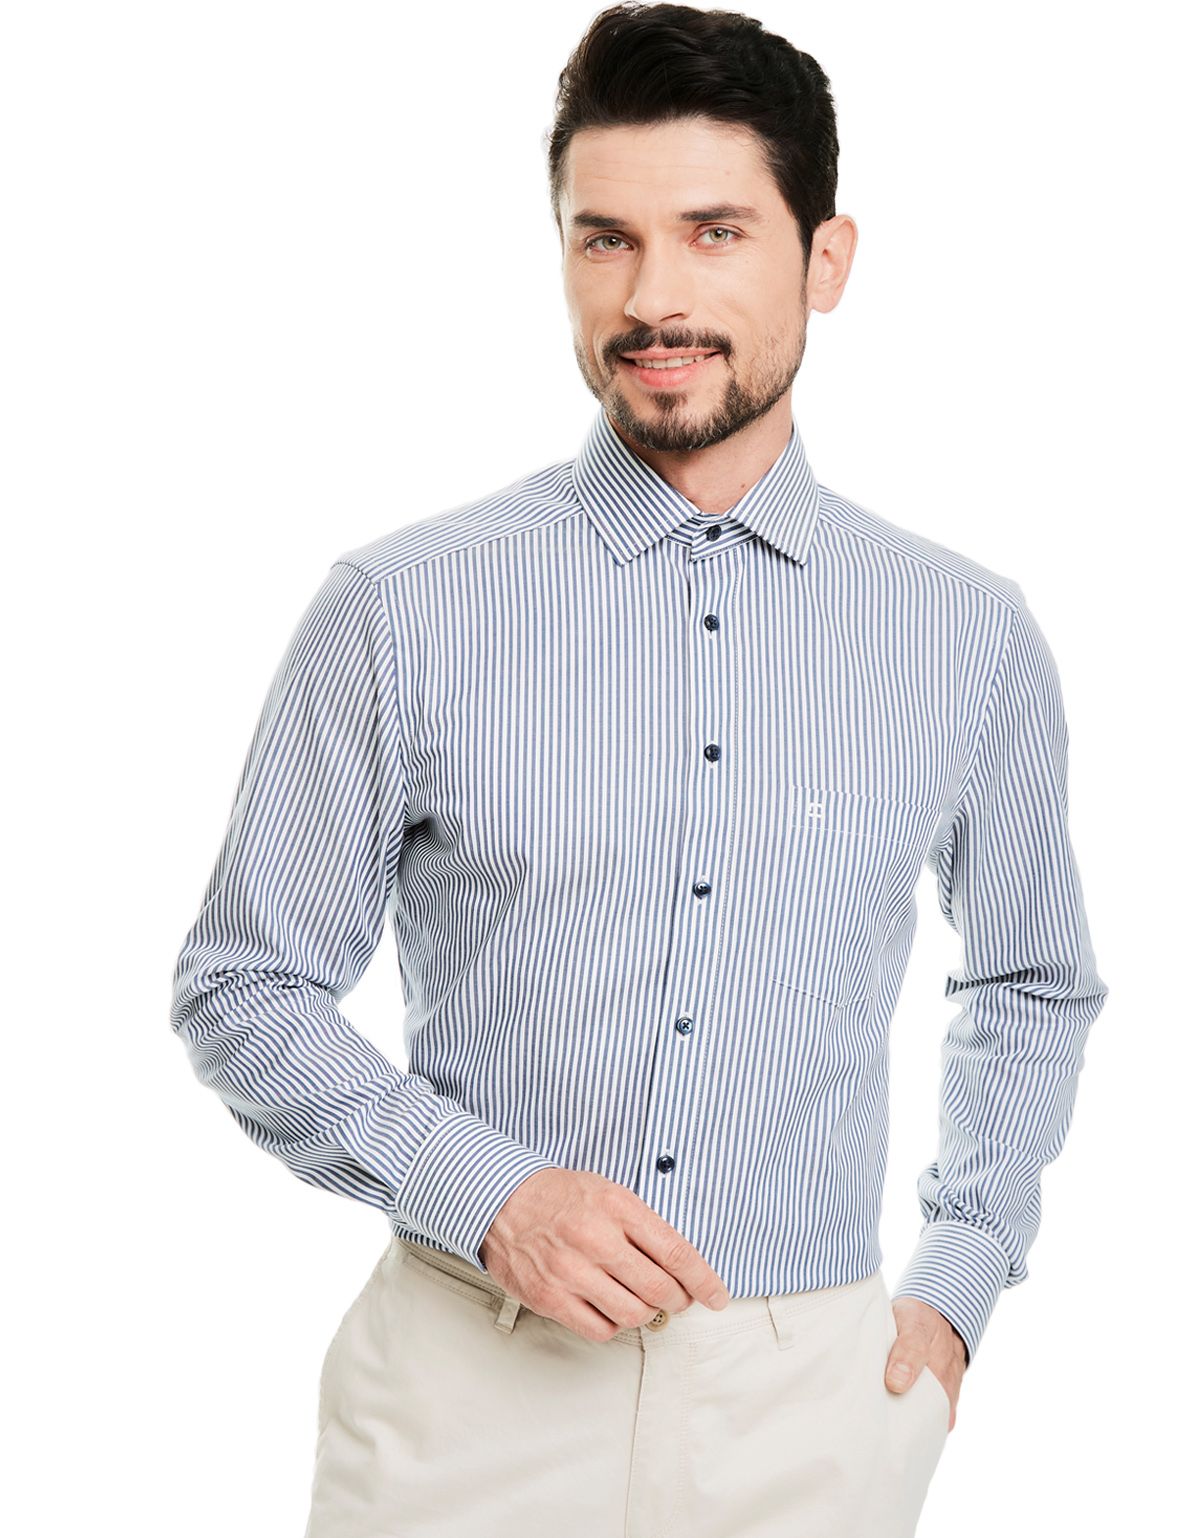 Рубашка мужская с длинным рукавом классическая OLYMP Luxor, modern fit[СИНИЙ]